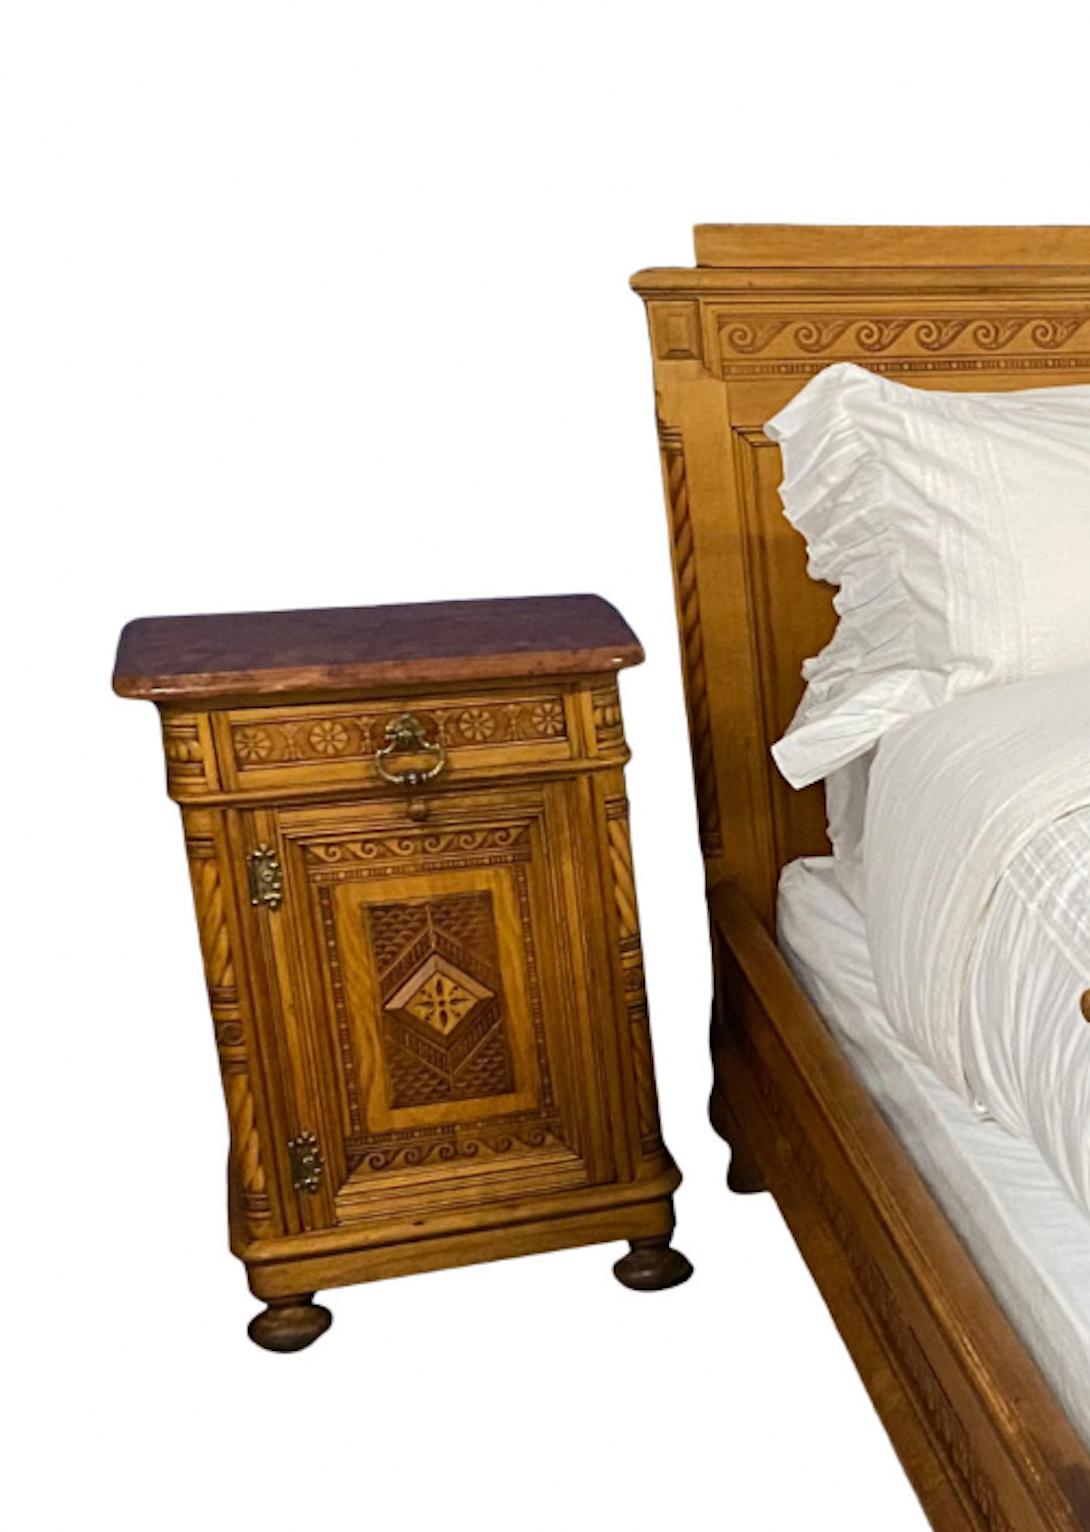 Ein auffälliges und kunstvoll kardiertes Paar österreichischer Vintage-Betten könnte gut zu einer verschneiten Berghütte passen. Jetzt neu konfiguriert für eine individuelle Kingsize-Matratze, können diese Betten mit passenden Beistelltischen und